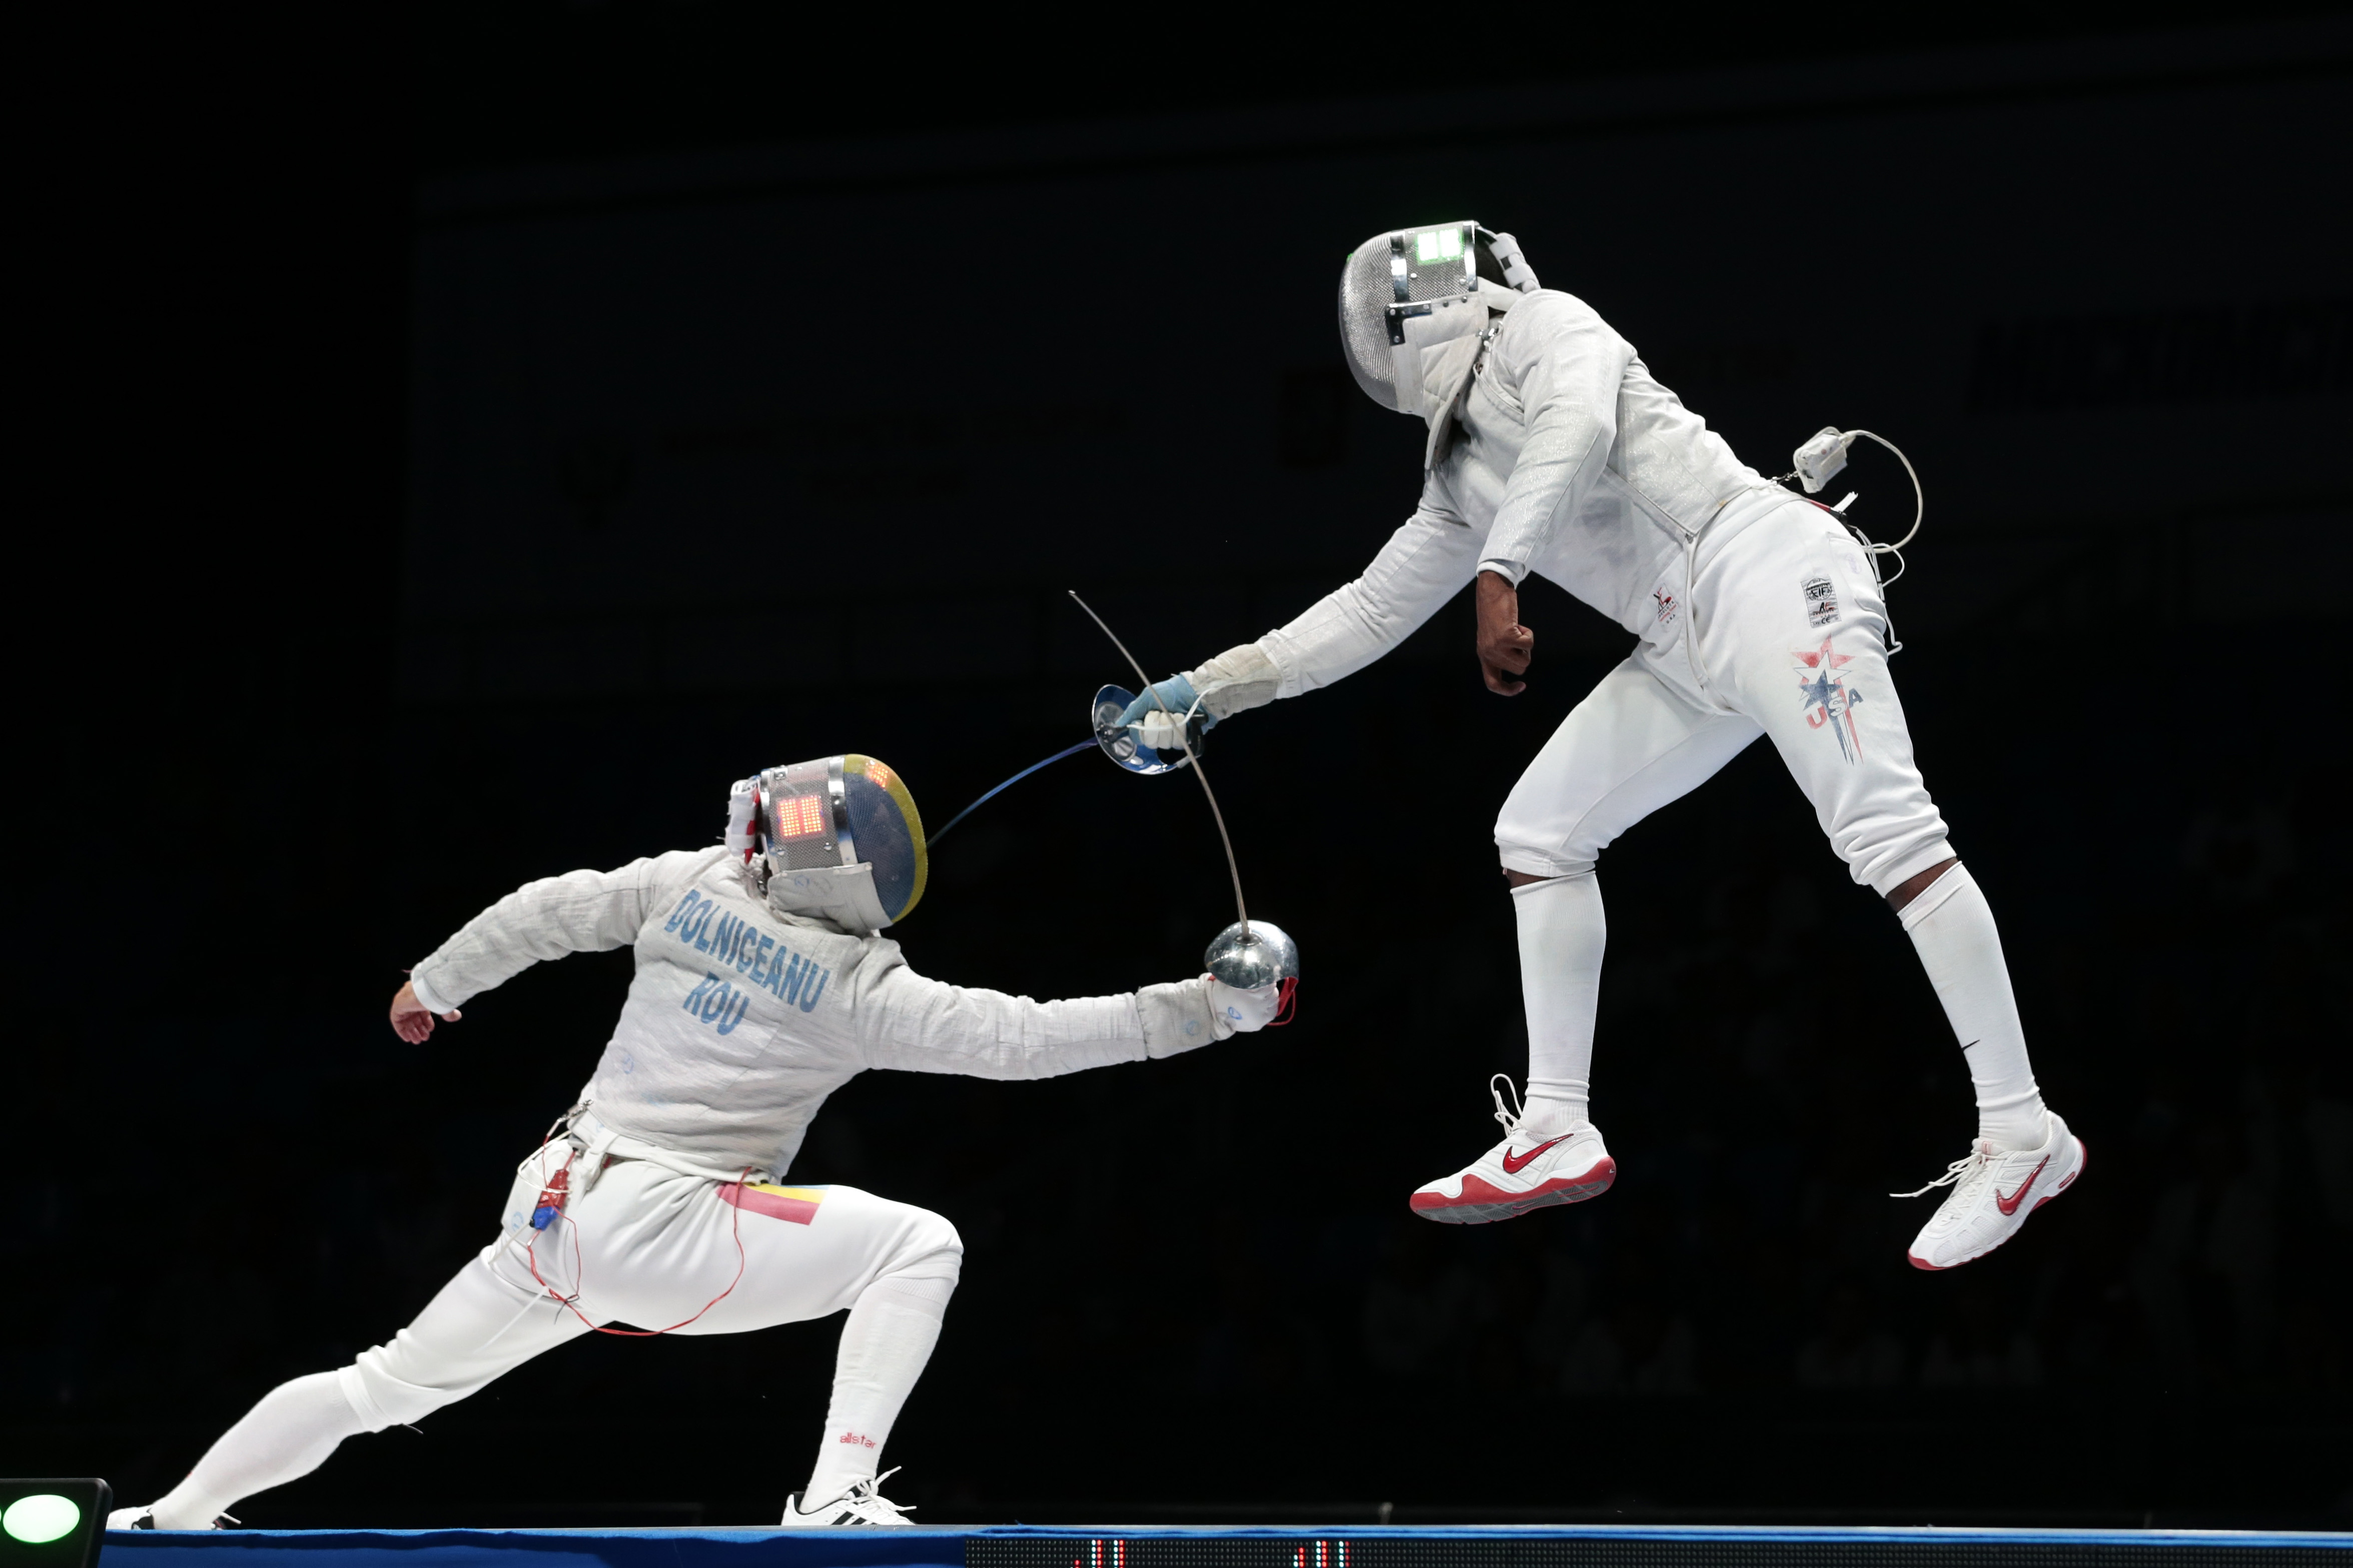 فوری؛ کمیته جهانی المپیک اجازه حضور تیم شمشیربازی روسیه در المپیک را صادر کرد